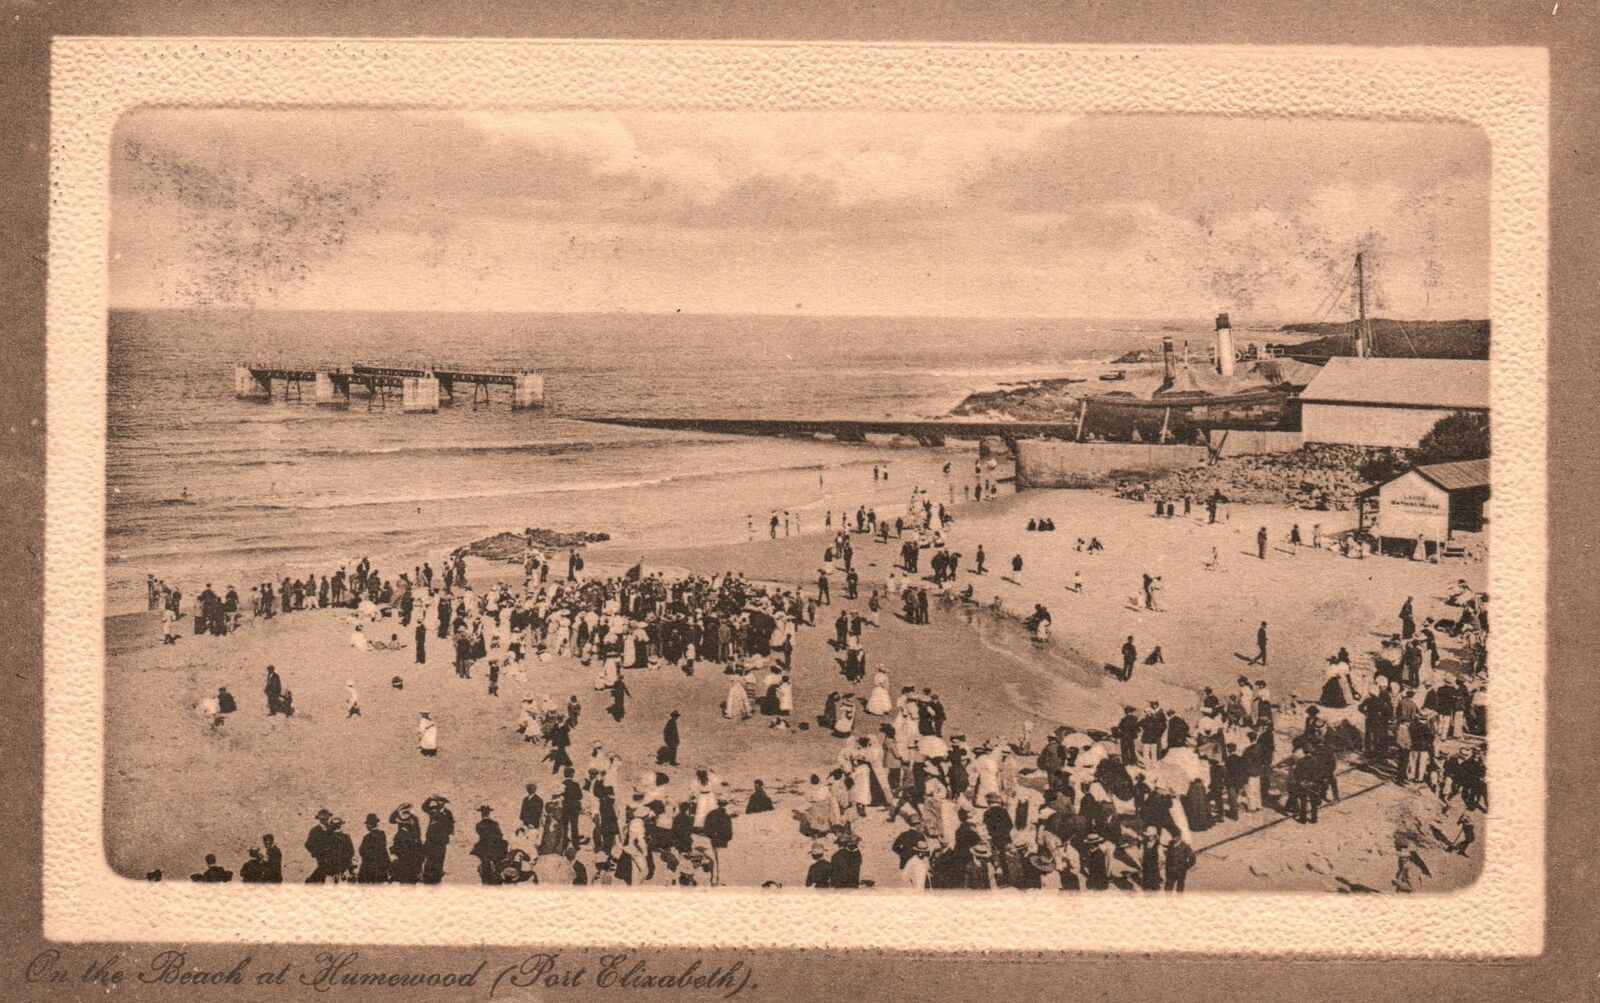 Vintage Postcard Beach Bathing Humewood Port Elizabeth Central News Agency Pub